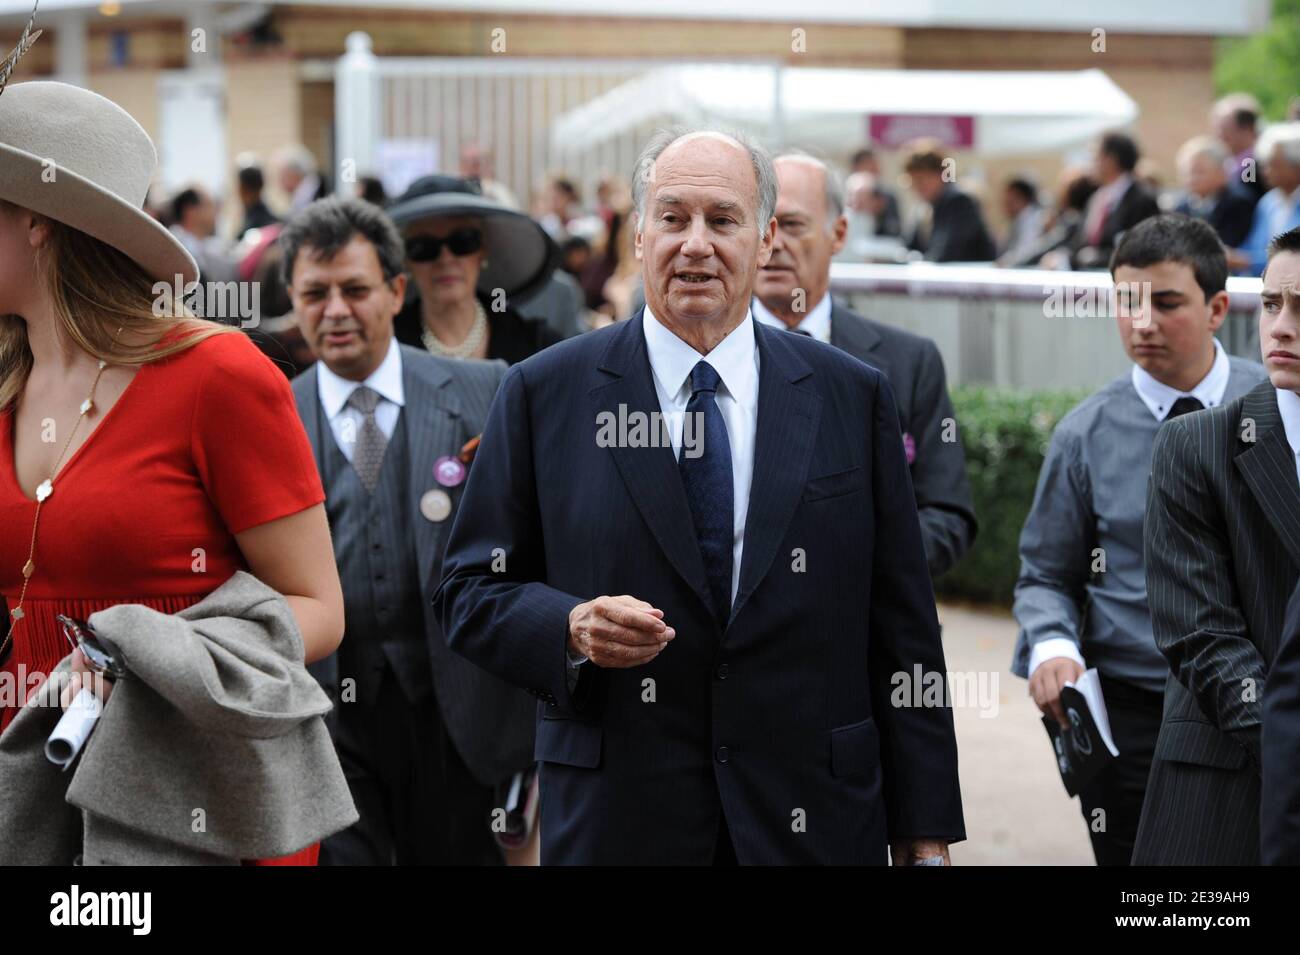 Son Altesse l'Aga Khan assiste à la 89e édition du prix Qatar Arc de Triomphe à l'hippodrome de Longchamp le 3 octobre 2010 à Paris, France. Photo de Nicolas Gouhier/ABACAPRESS.COM Banque D'Images